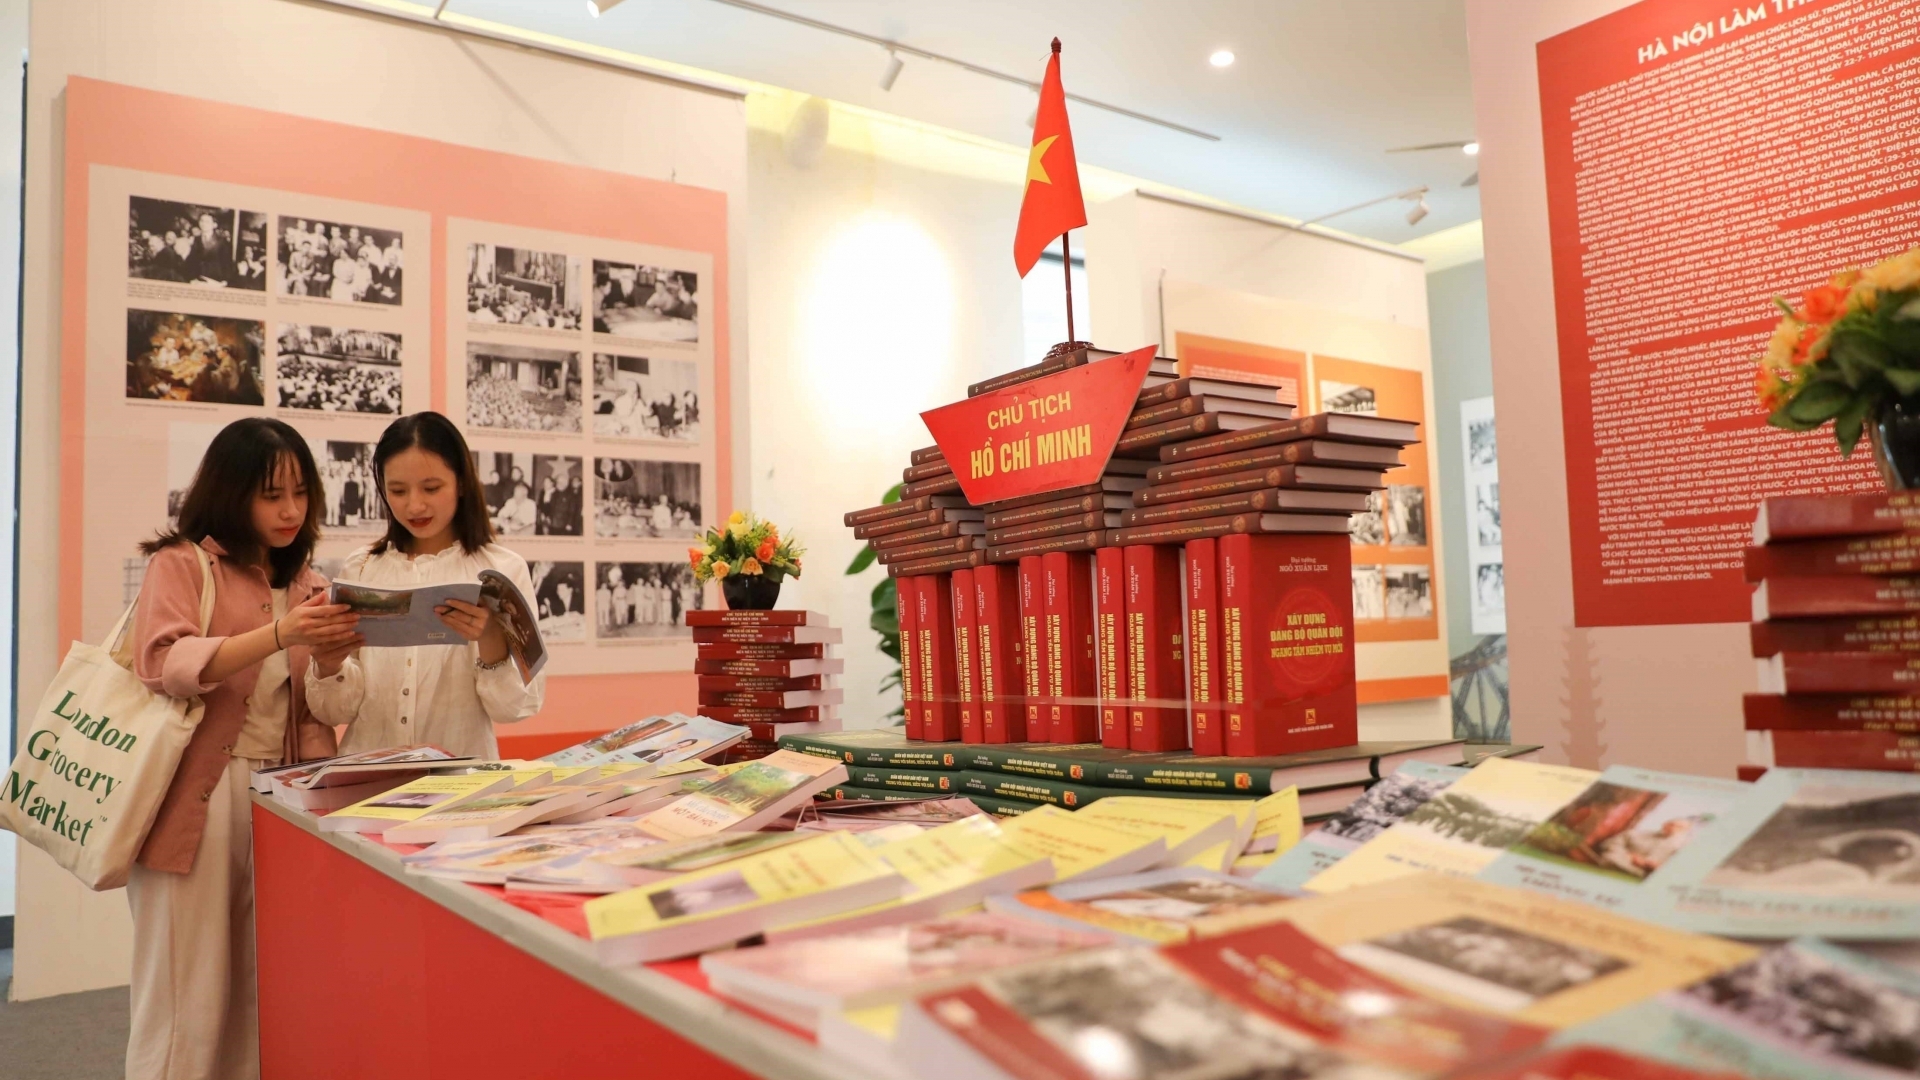 “胡志明主席与首都河内”图片展：庆祝首都河内解放68周年的活动之一